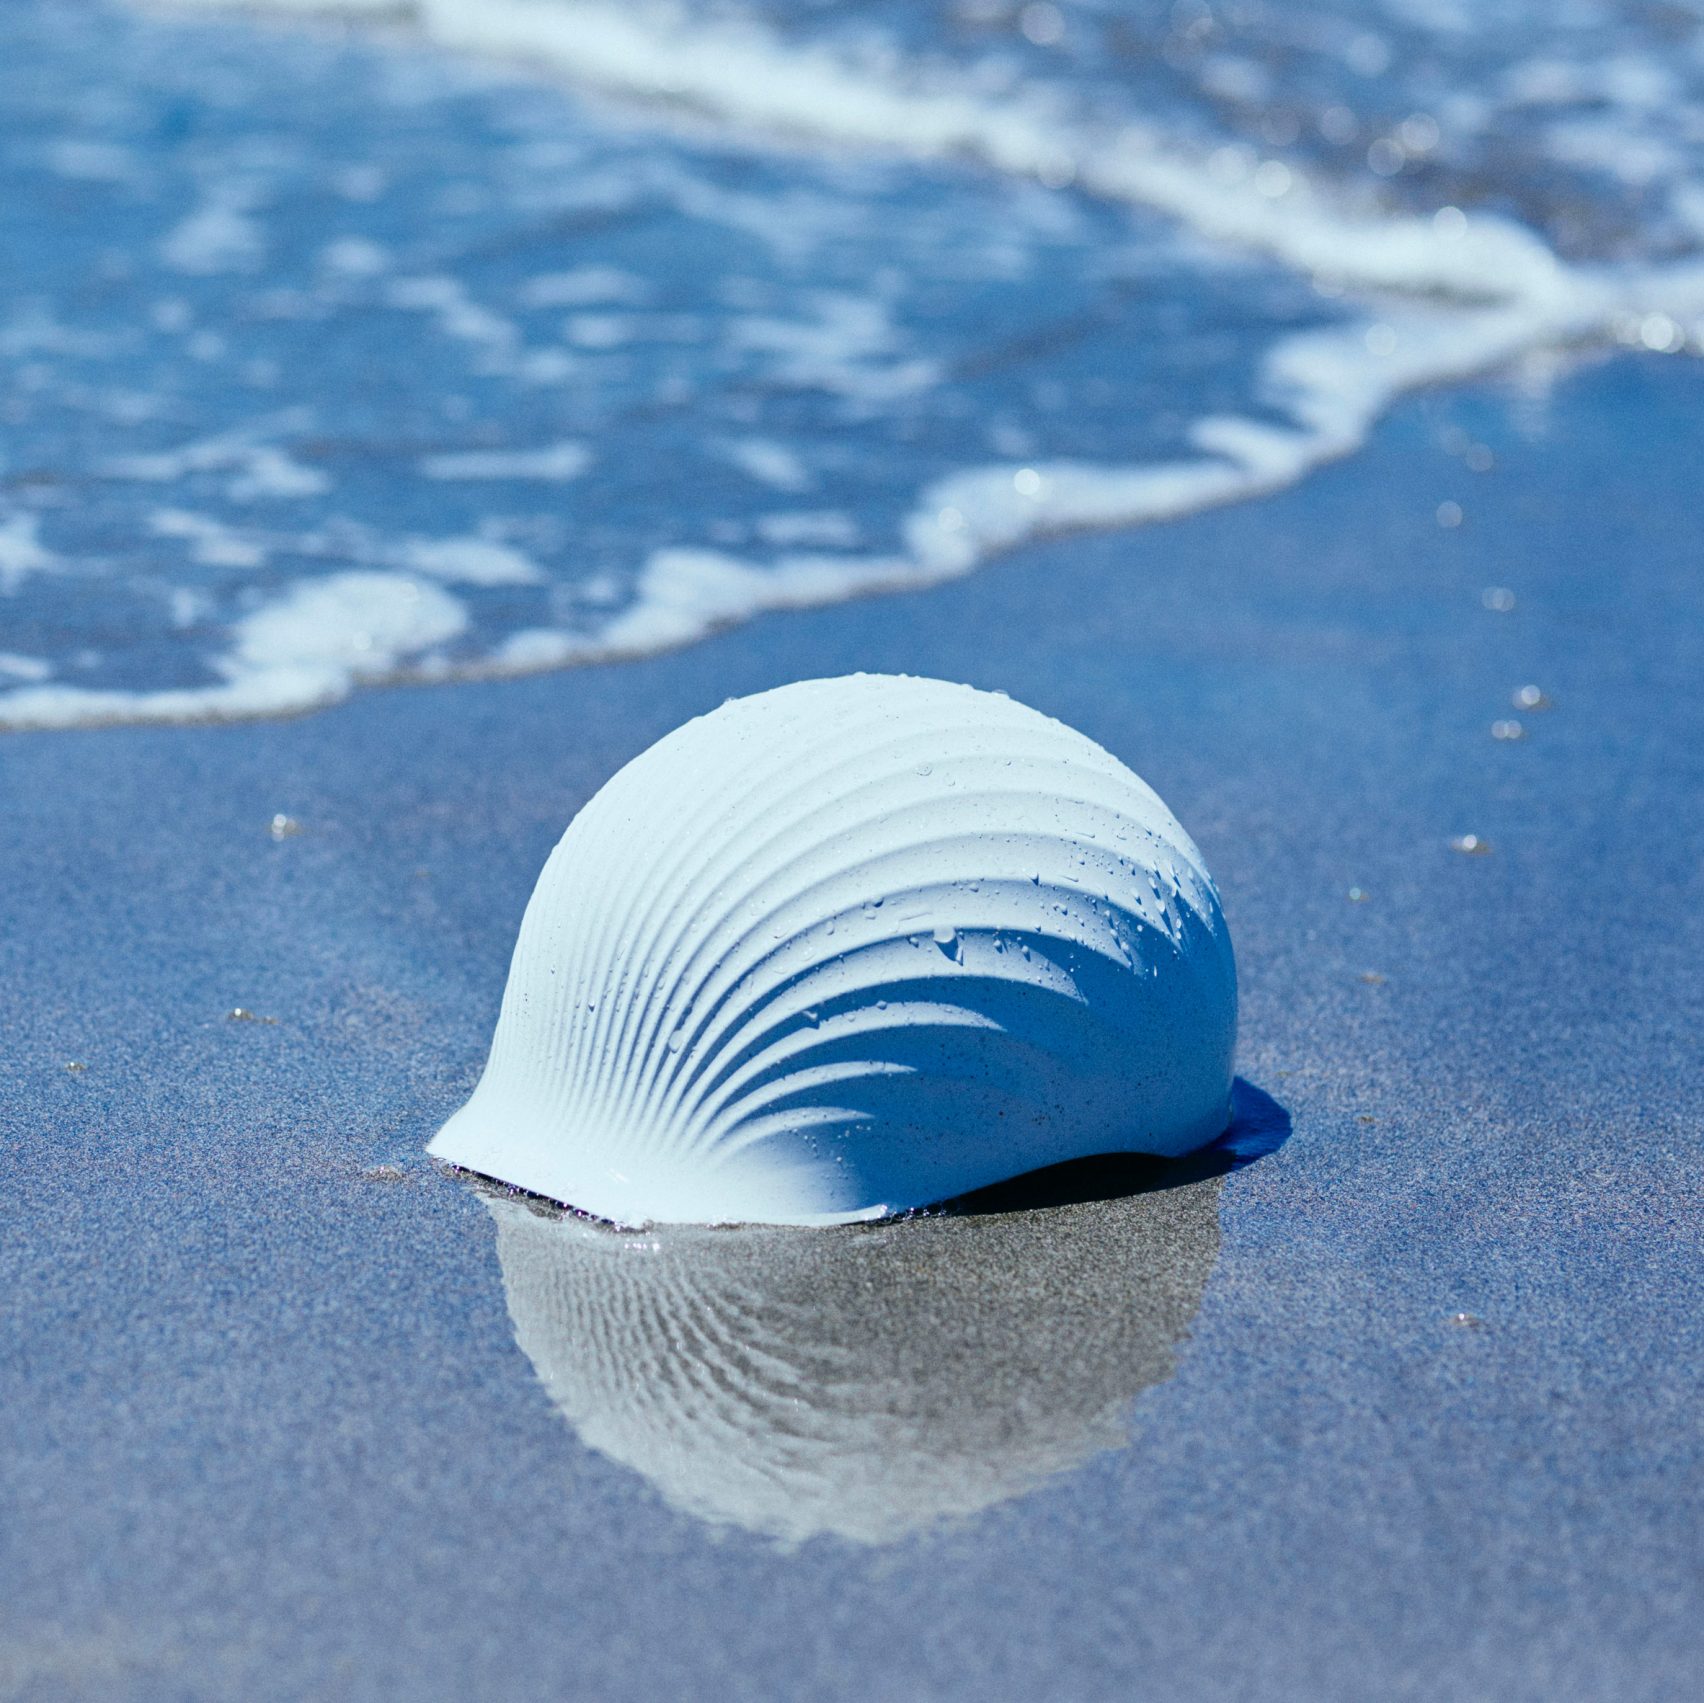 Shellmet helmet on the beach in Japan